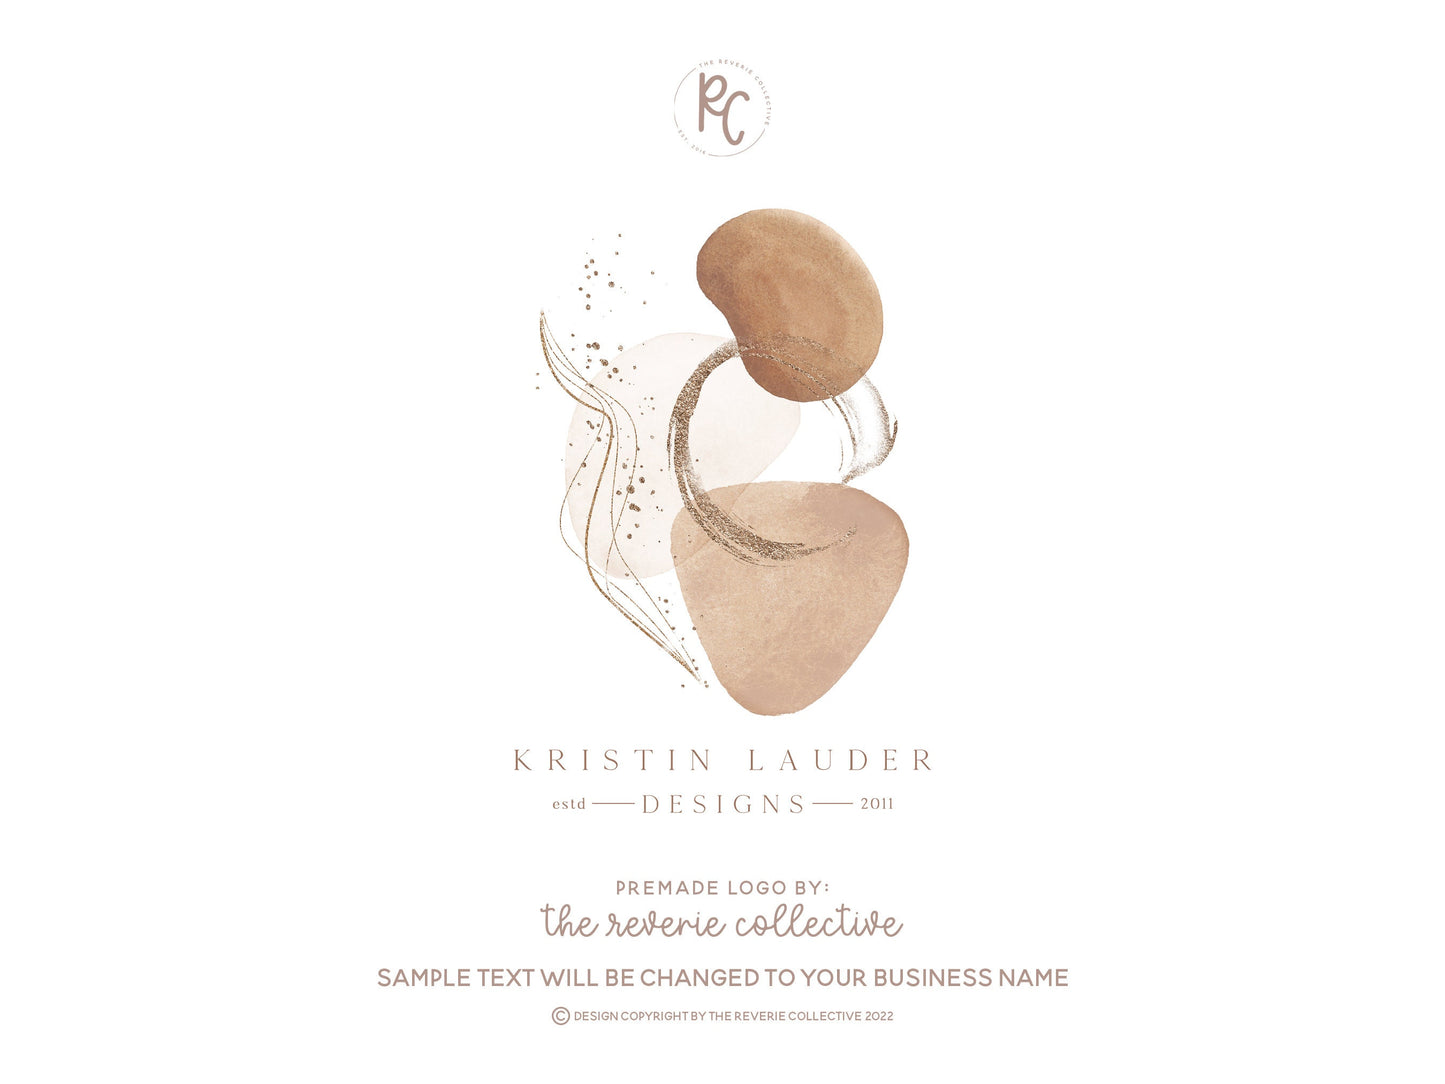 Kristen Lauder | Premade Logo Design | Boho, Neutral, Modern, Beauty